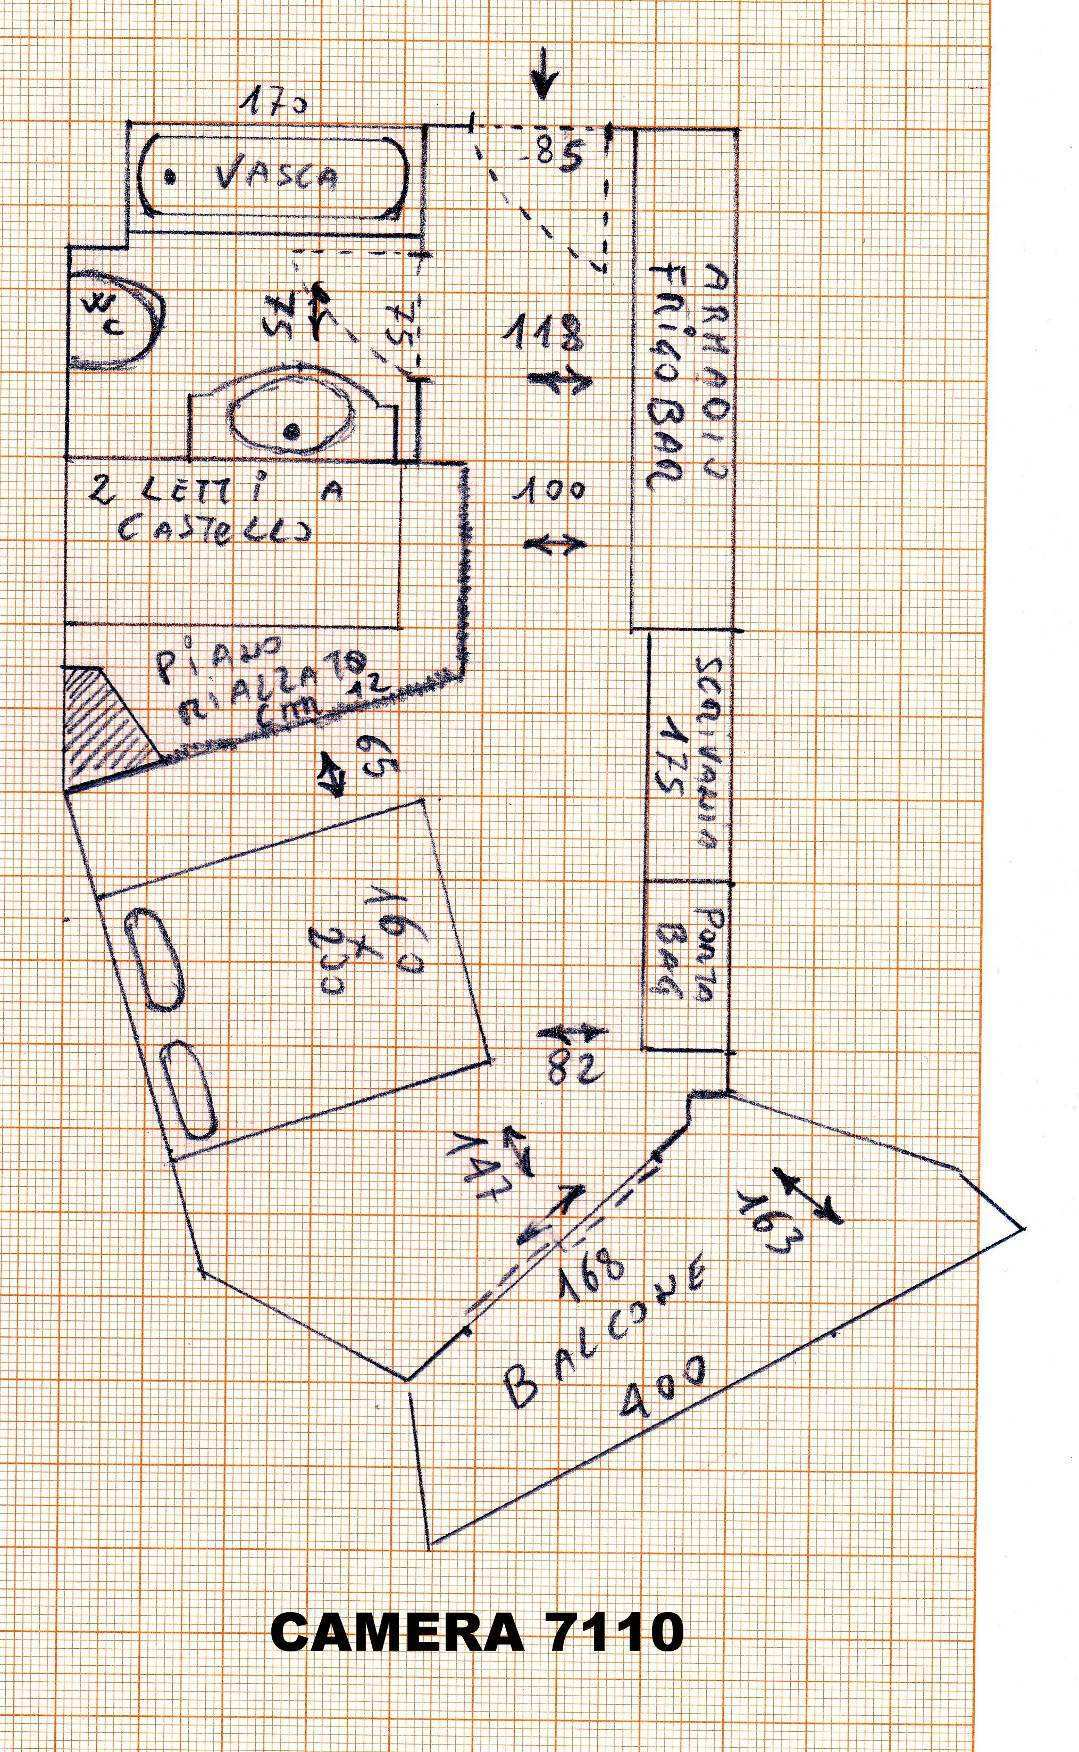 69 1) Indicare tipo e numero della camera o appartamento visitato 7110 (camera family) 2) A che piano si trova?